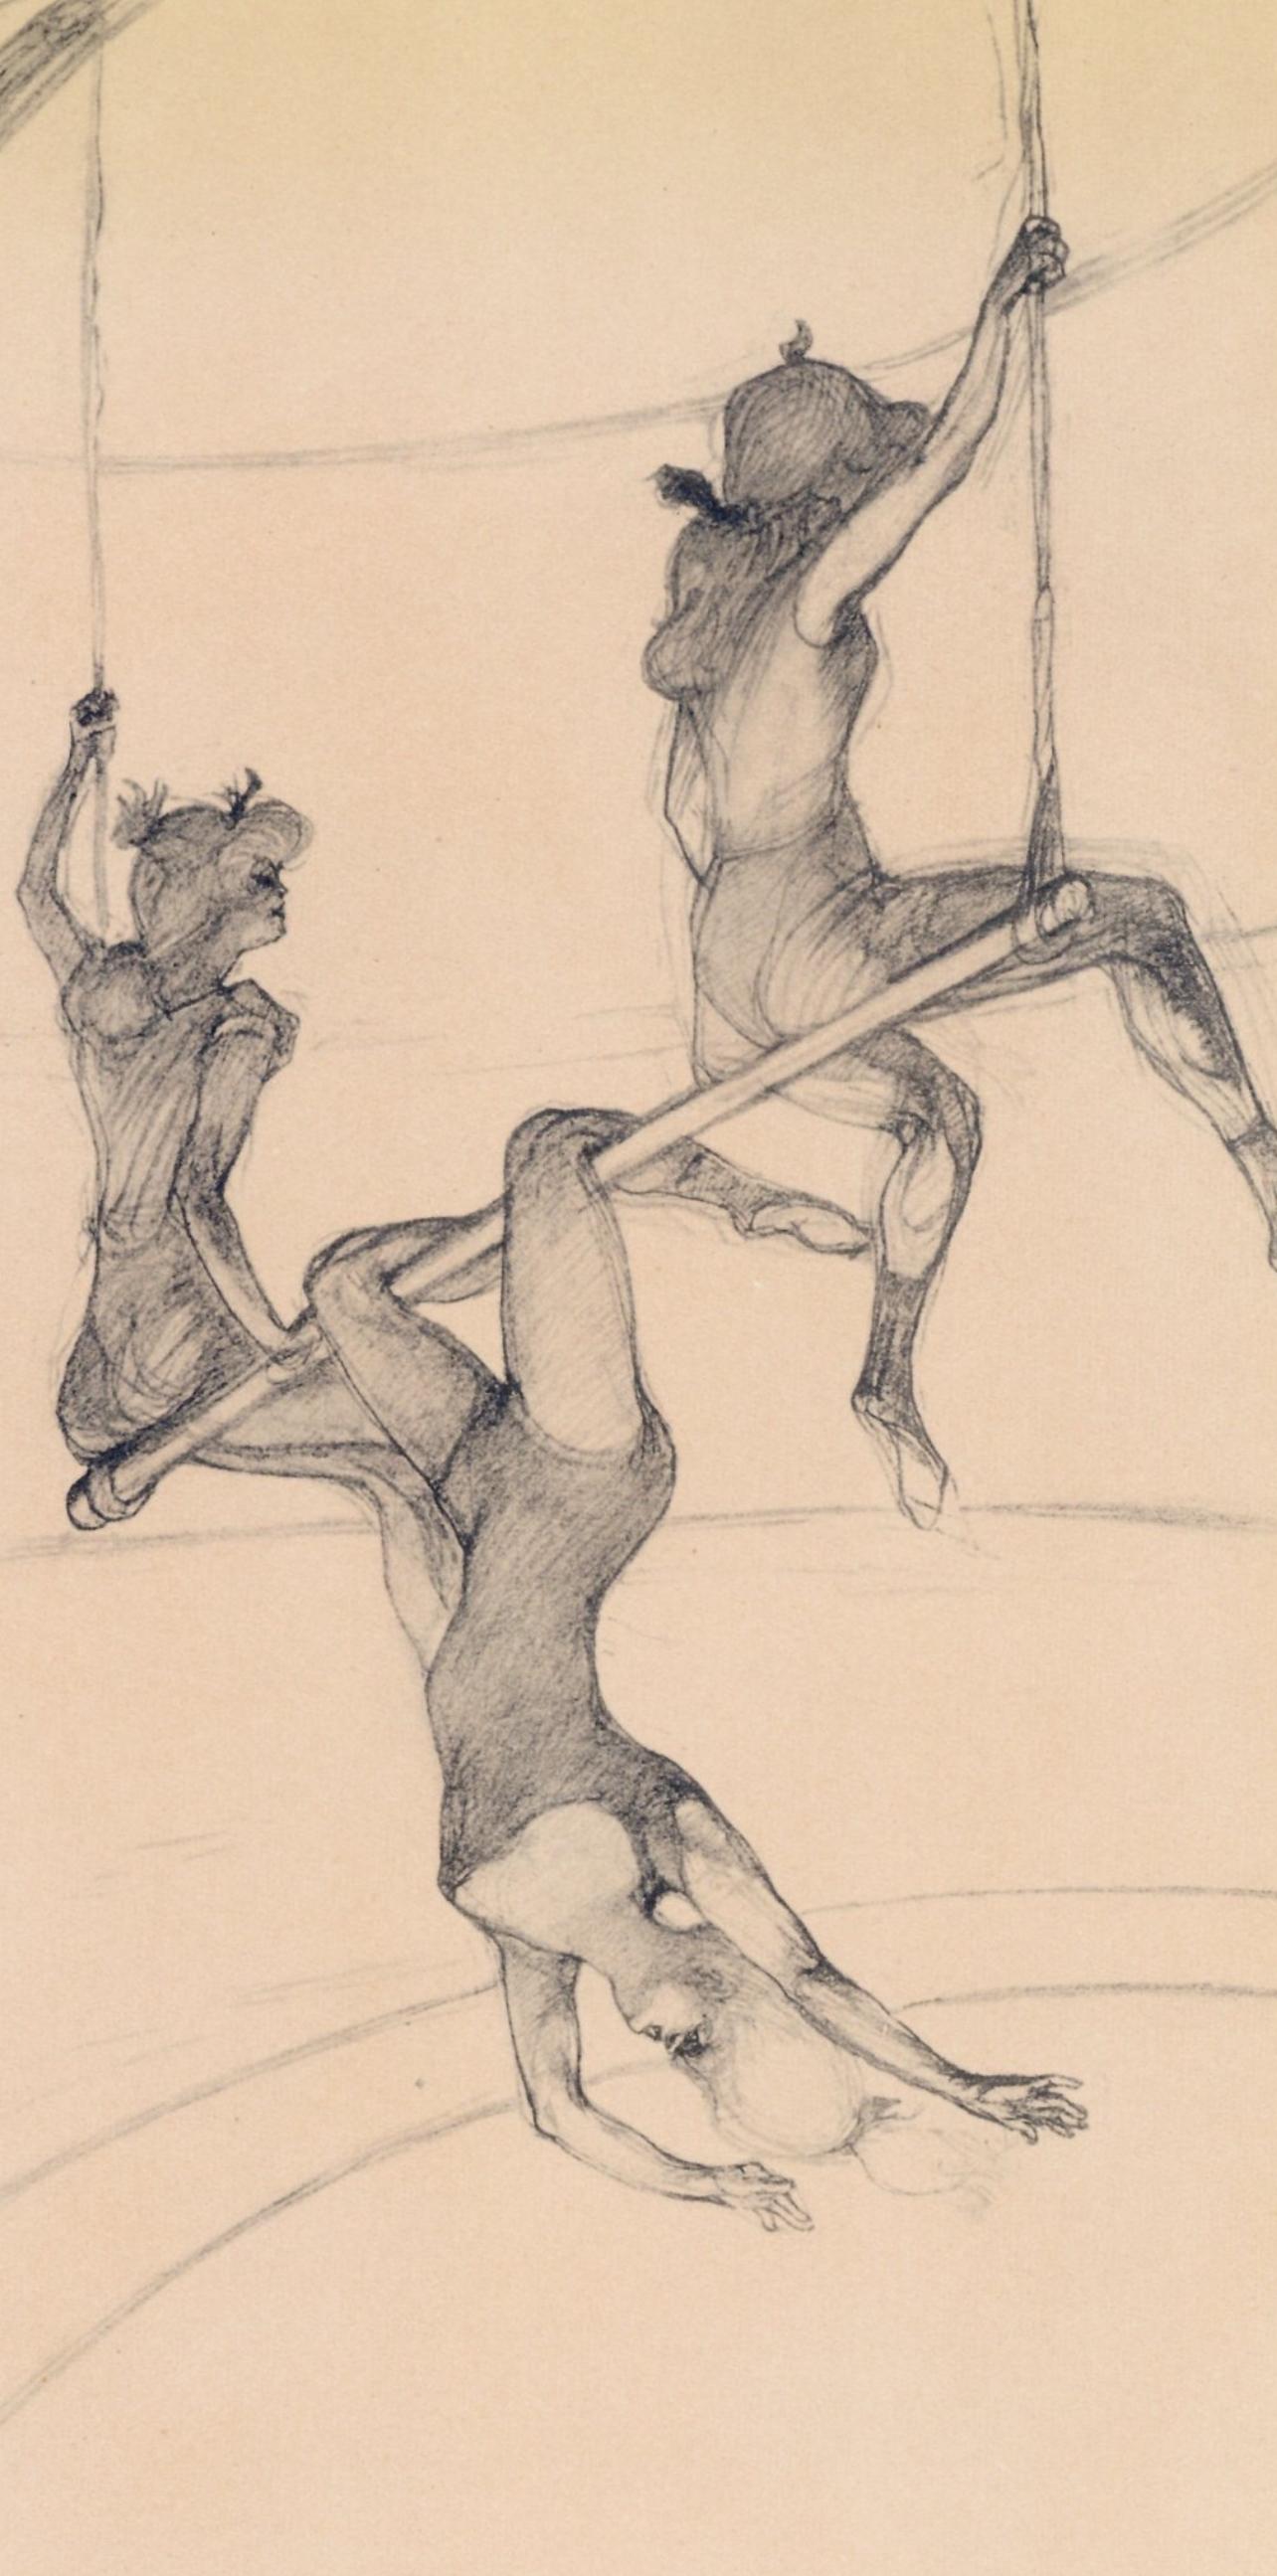 Toulouse-Lautrec, Le trapeze volant, The Circus by Toulouse-Lautrec (after) - Print by Henri de Toulouse-Lautrec